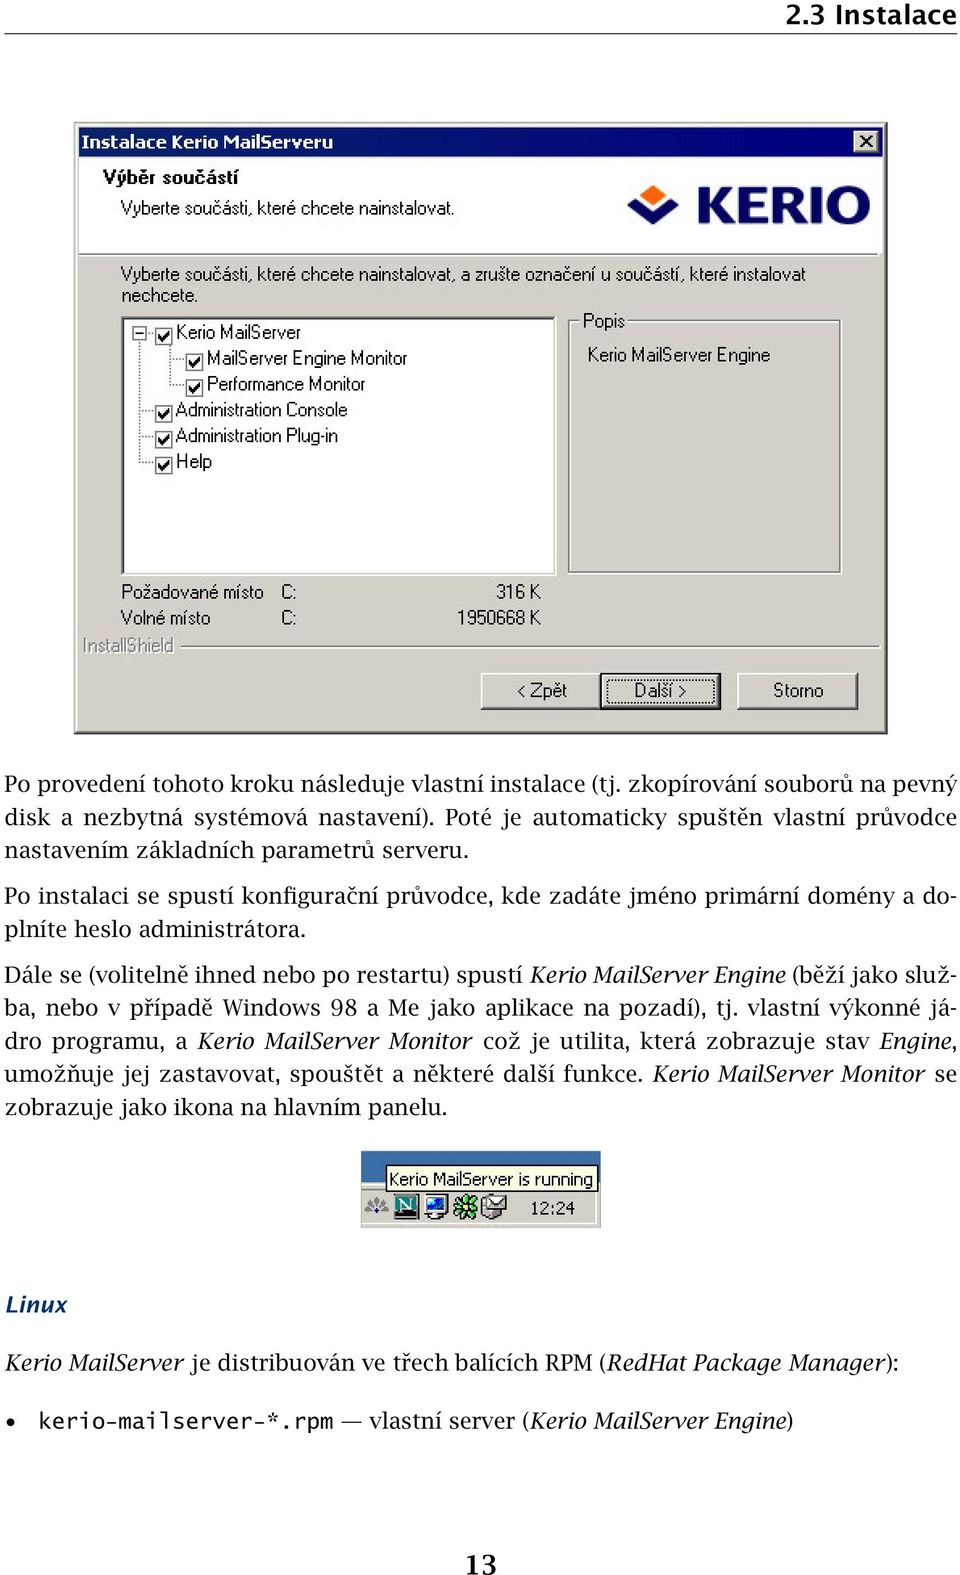 Dále se (volitelně ihned nebo po restartu) spustí Kerio MailServer Engine (běží jako služba, nebo v případě Windows 98 a Me jako aplikace na pozadí), tj.